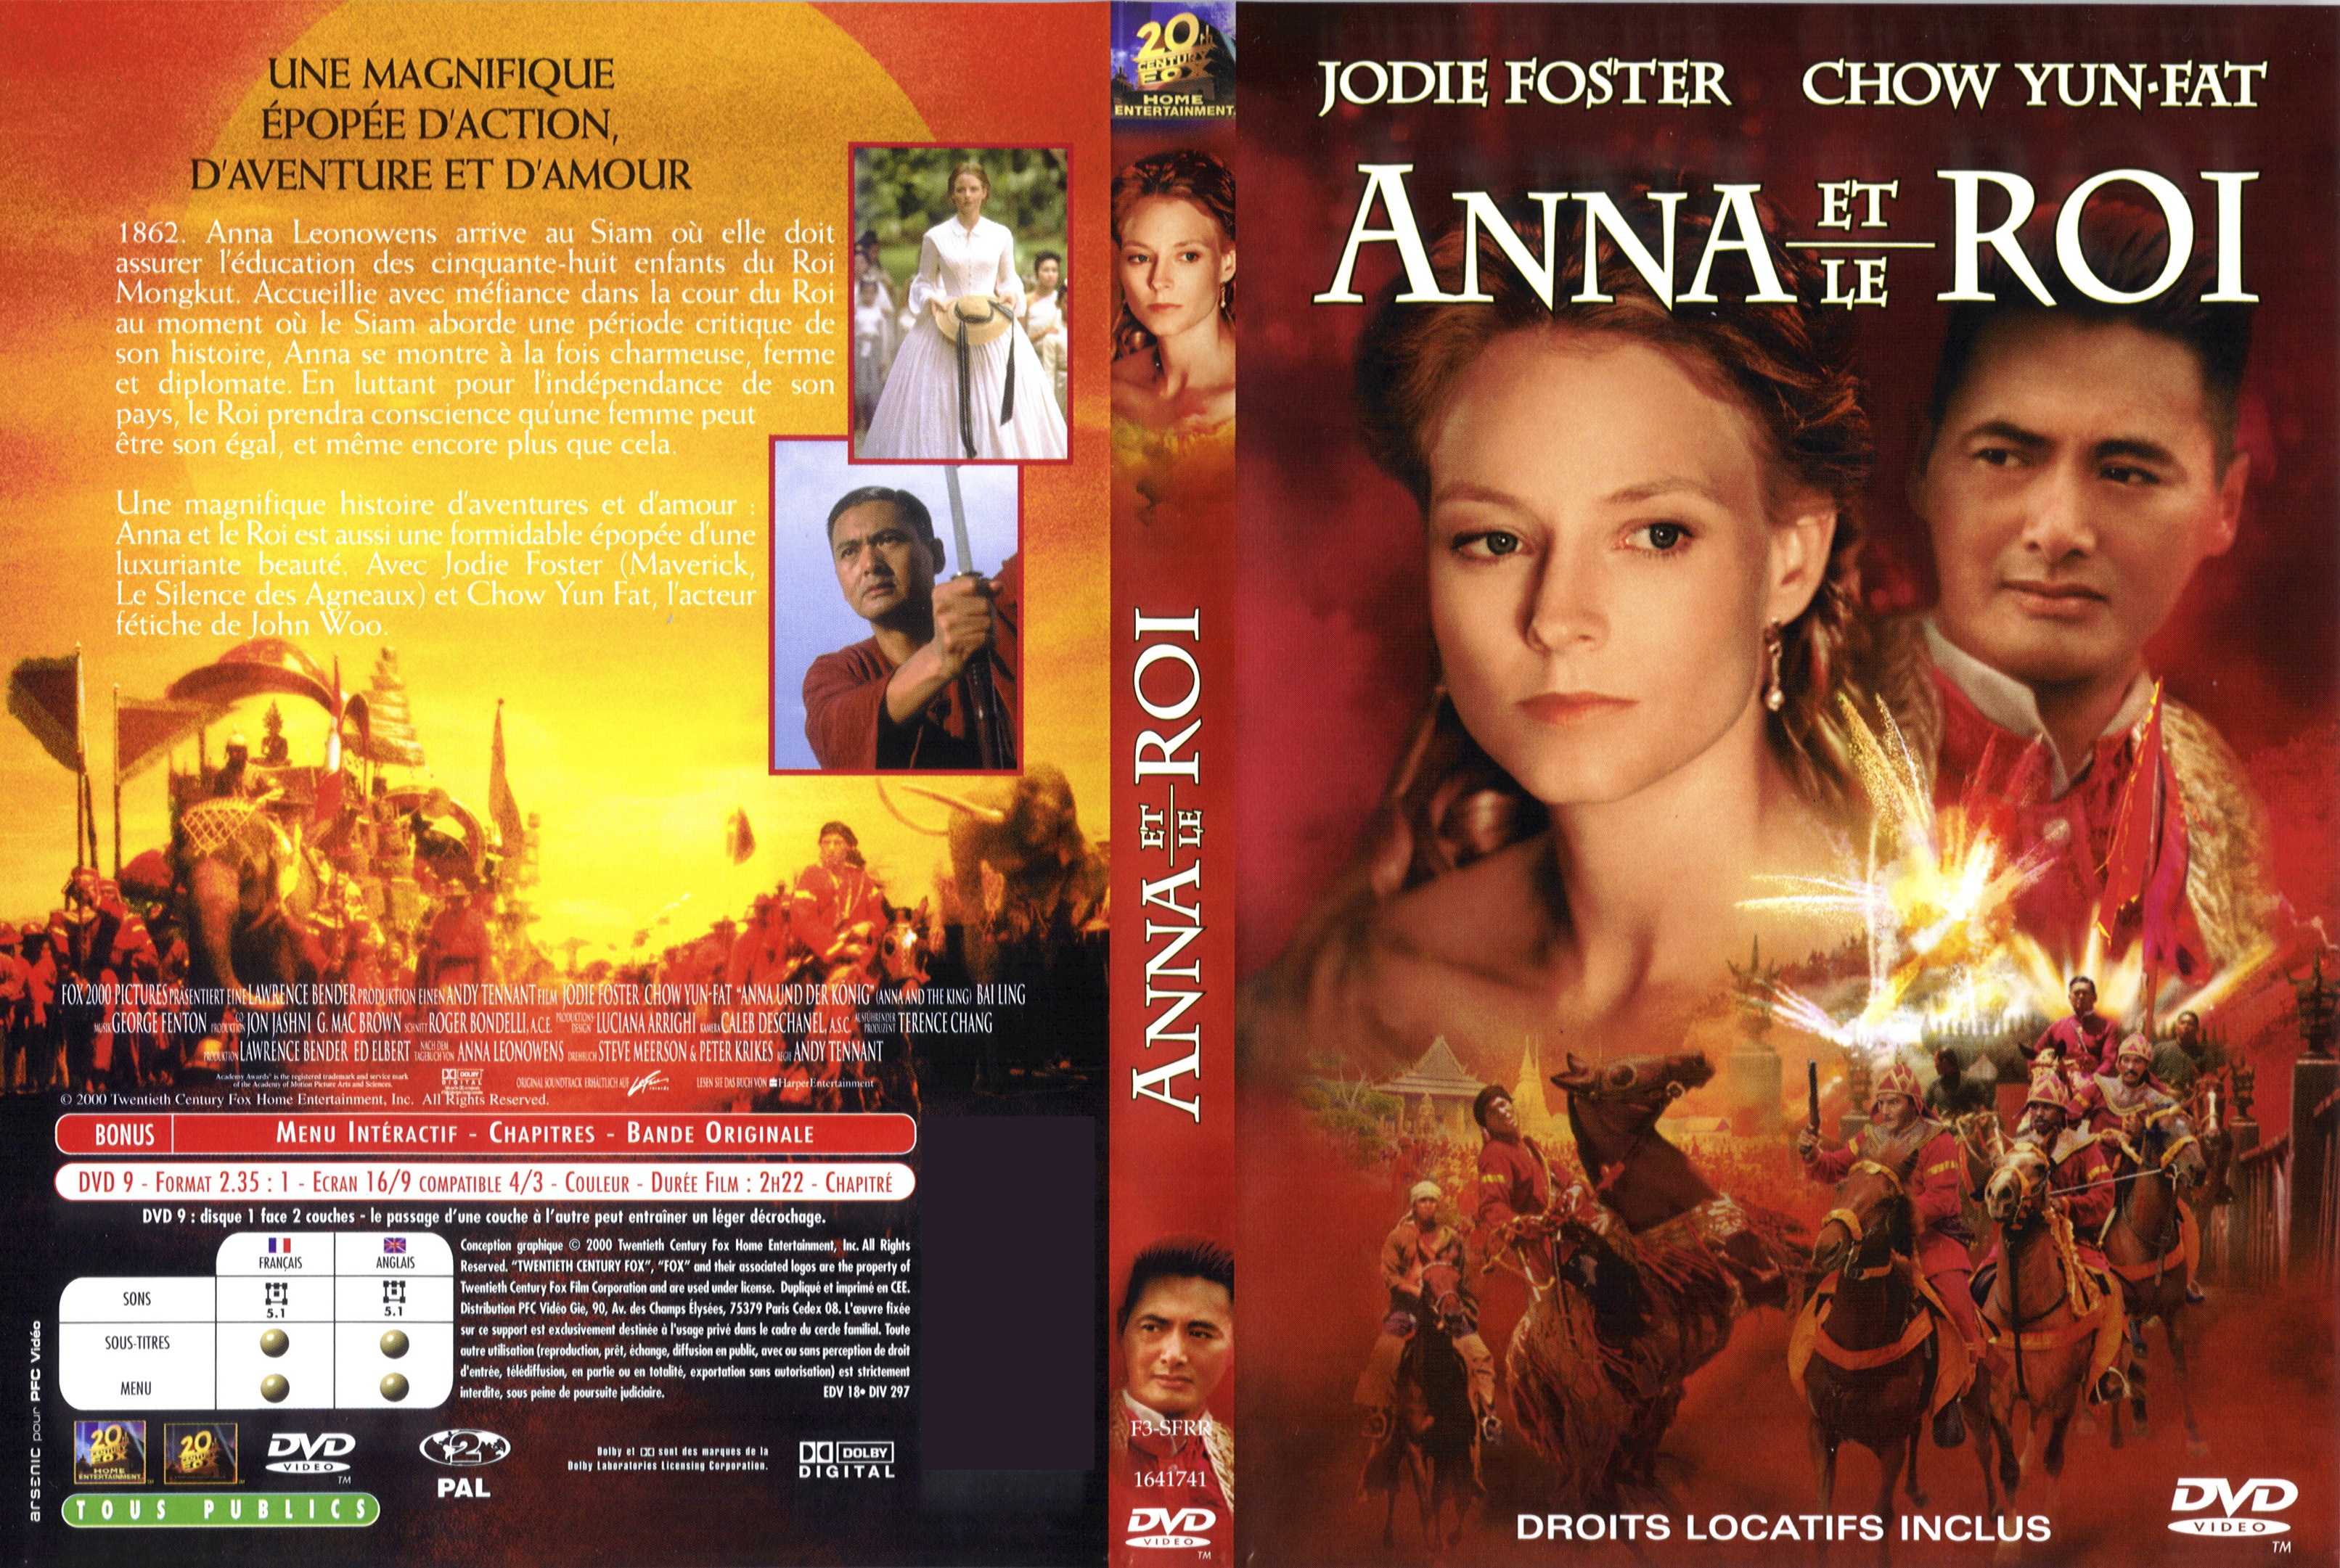 Jaquette DVD Anna et le roi v2